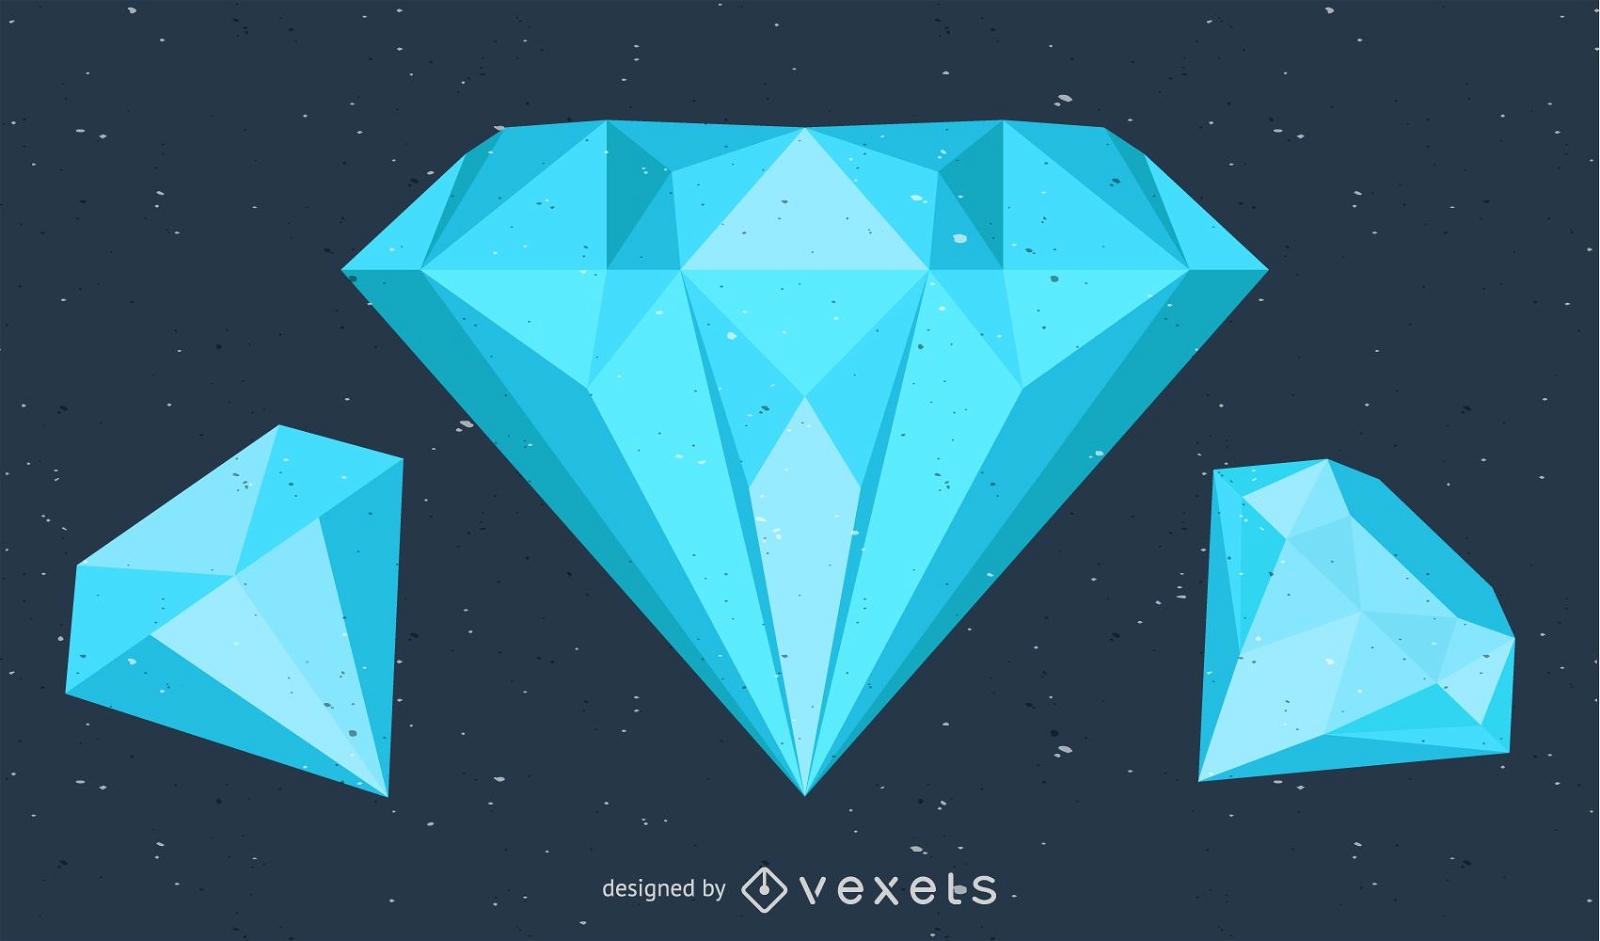 diamond vector art